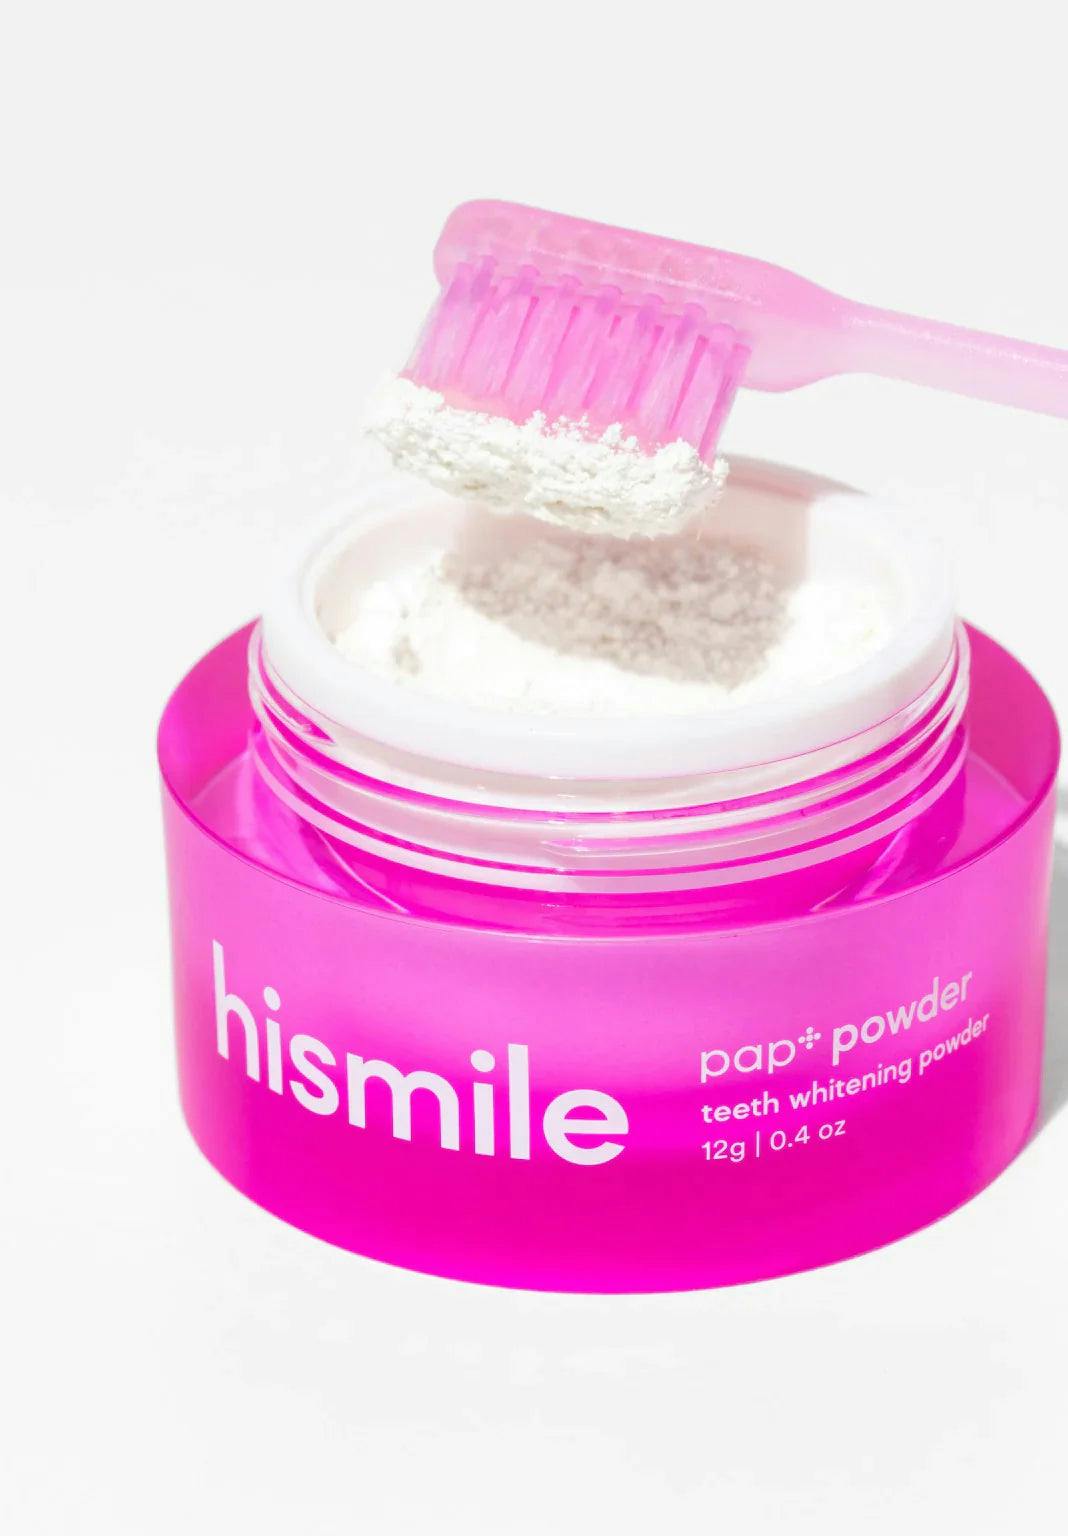 hismile PAP+ Whitening Powder